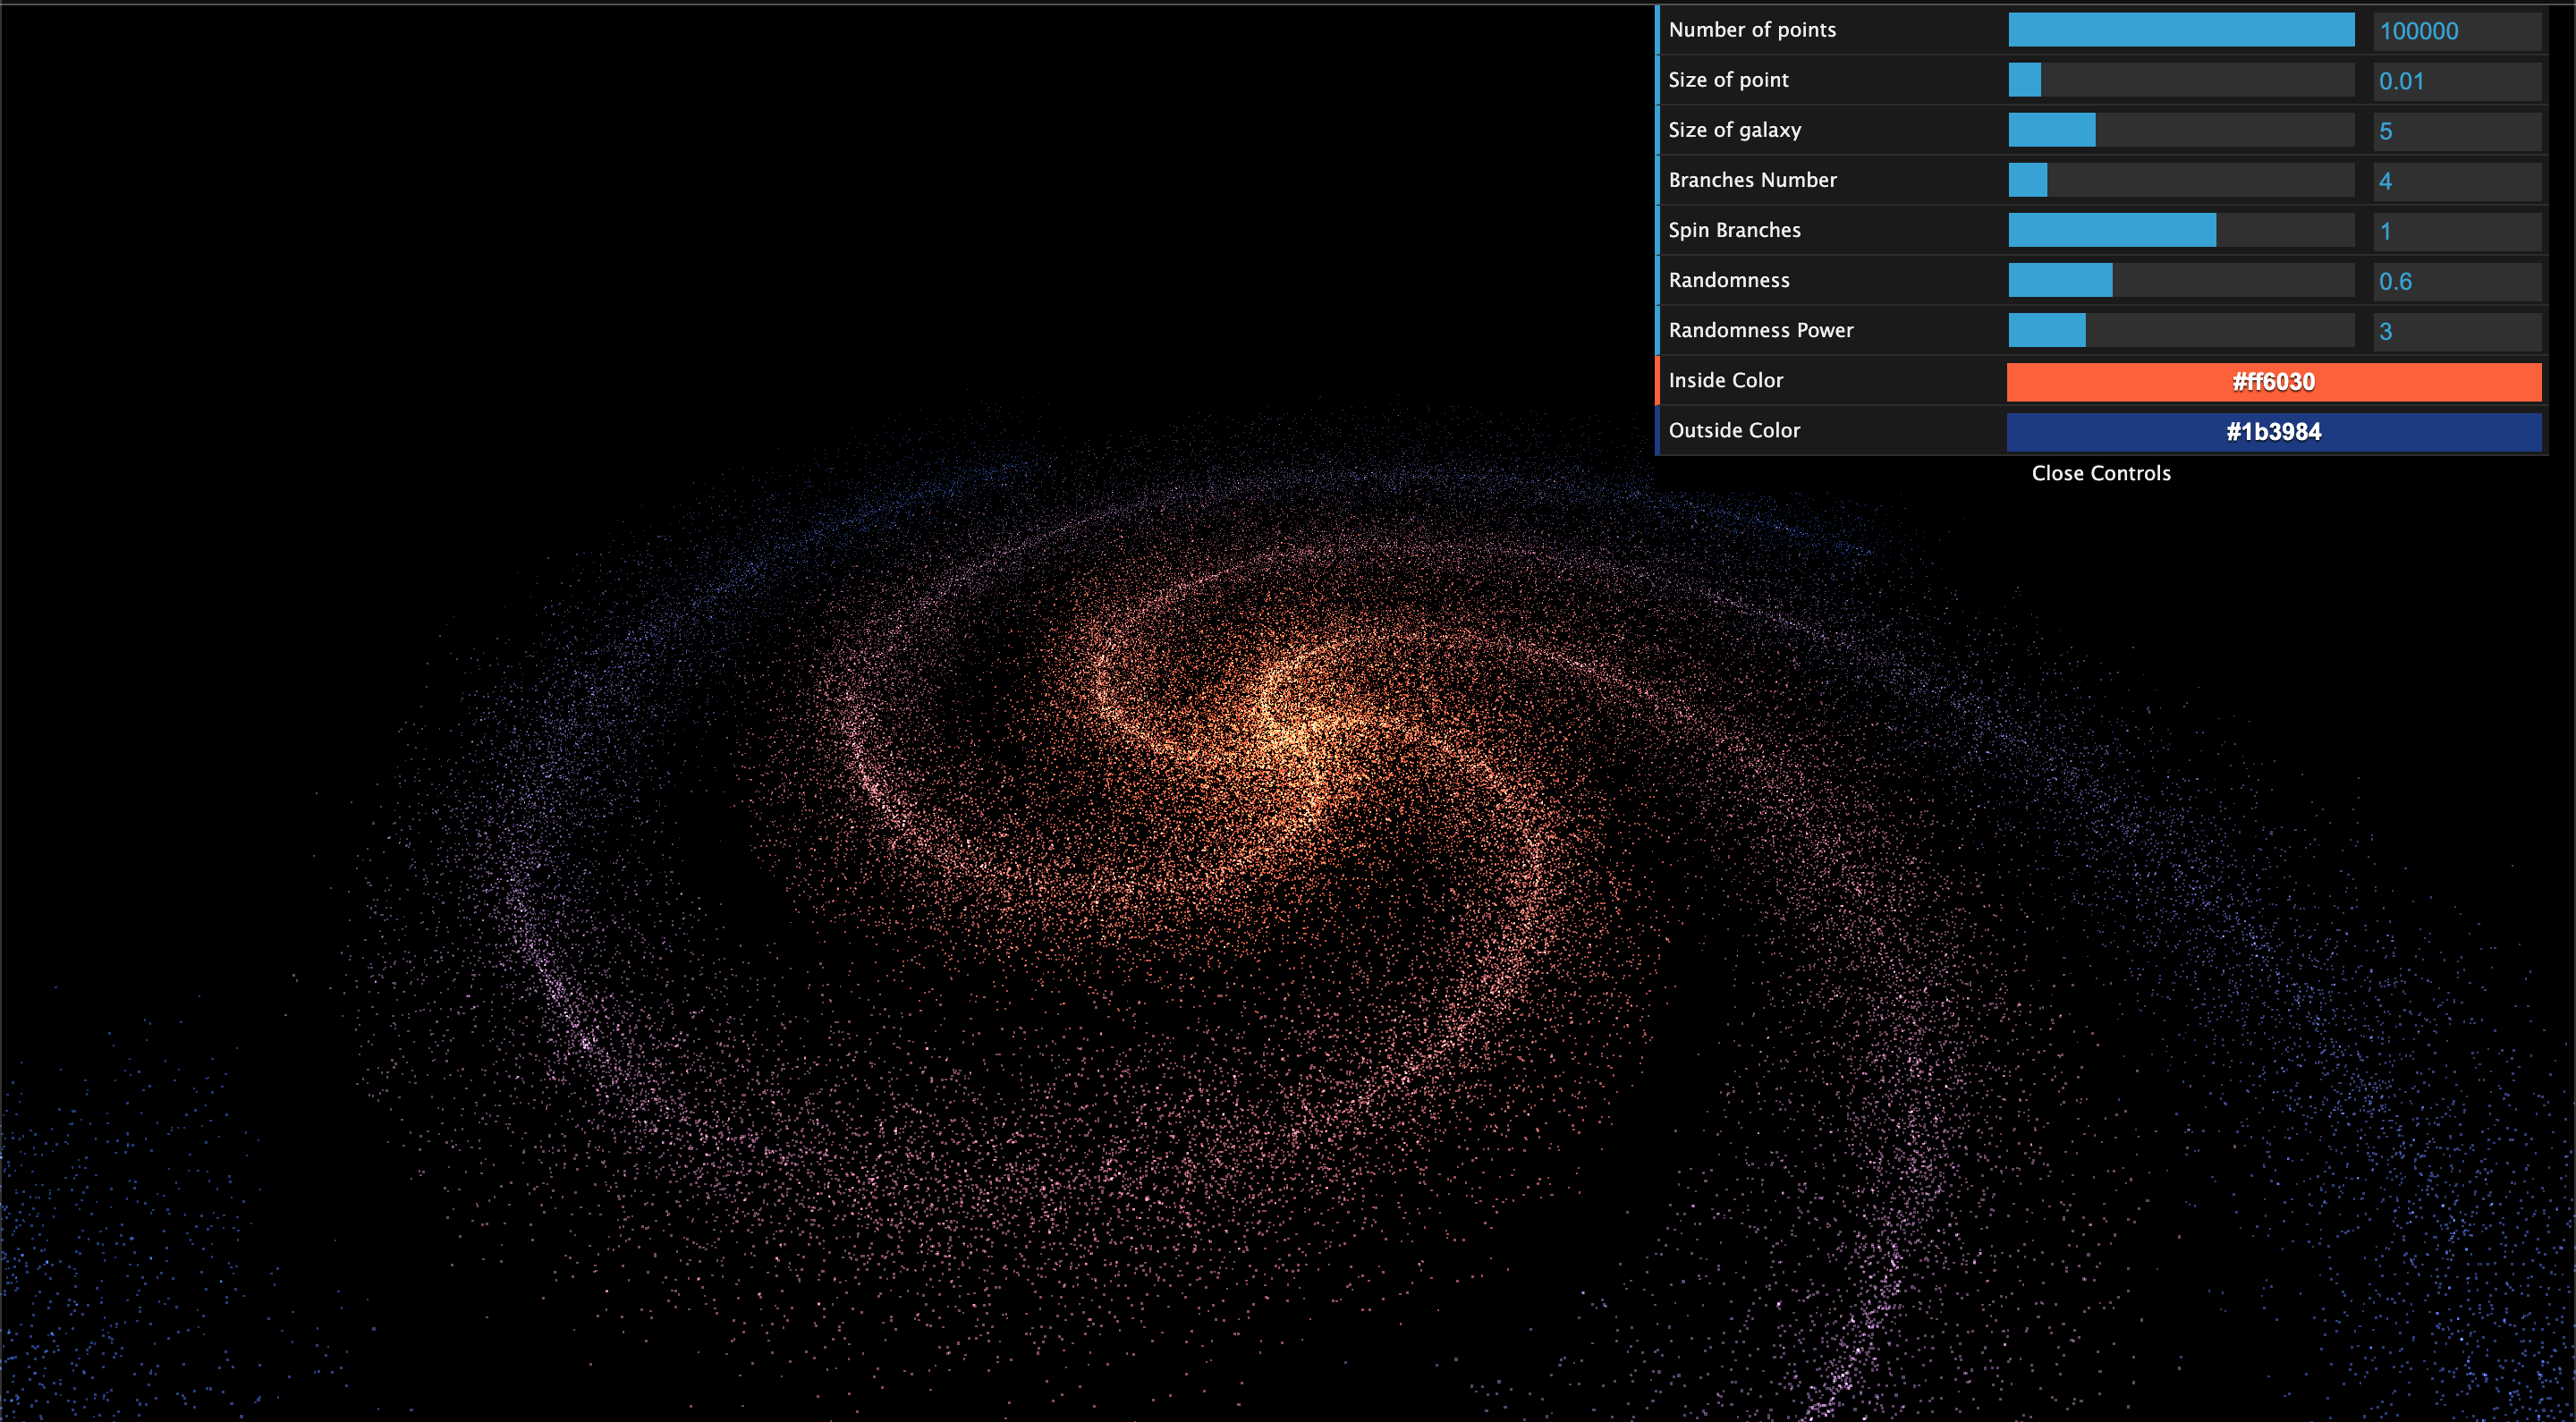 3D spiral galaxypreview